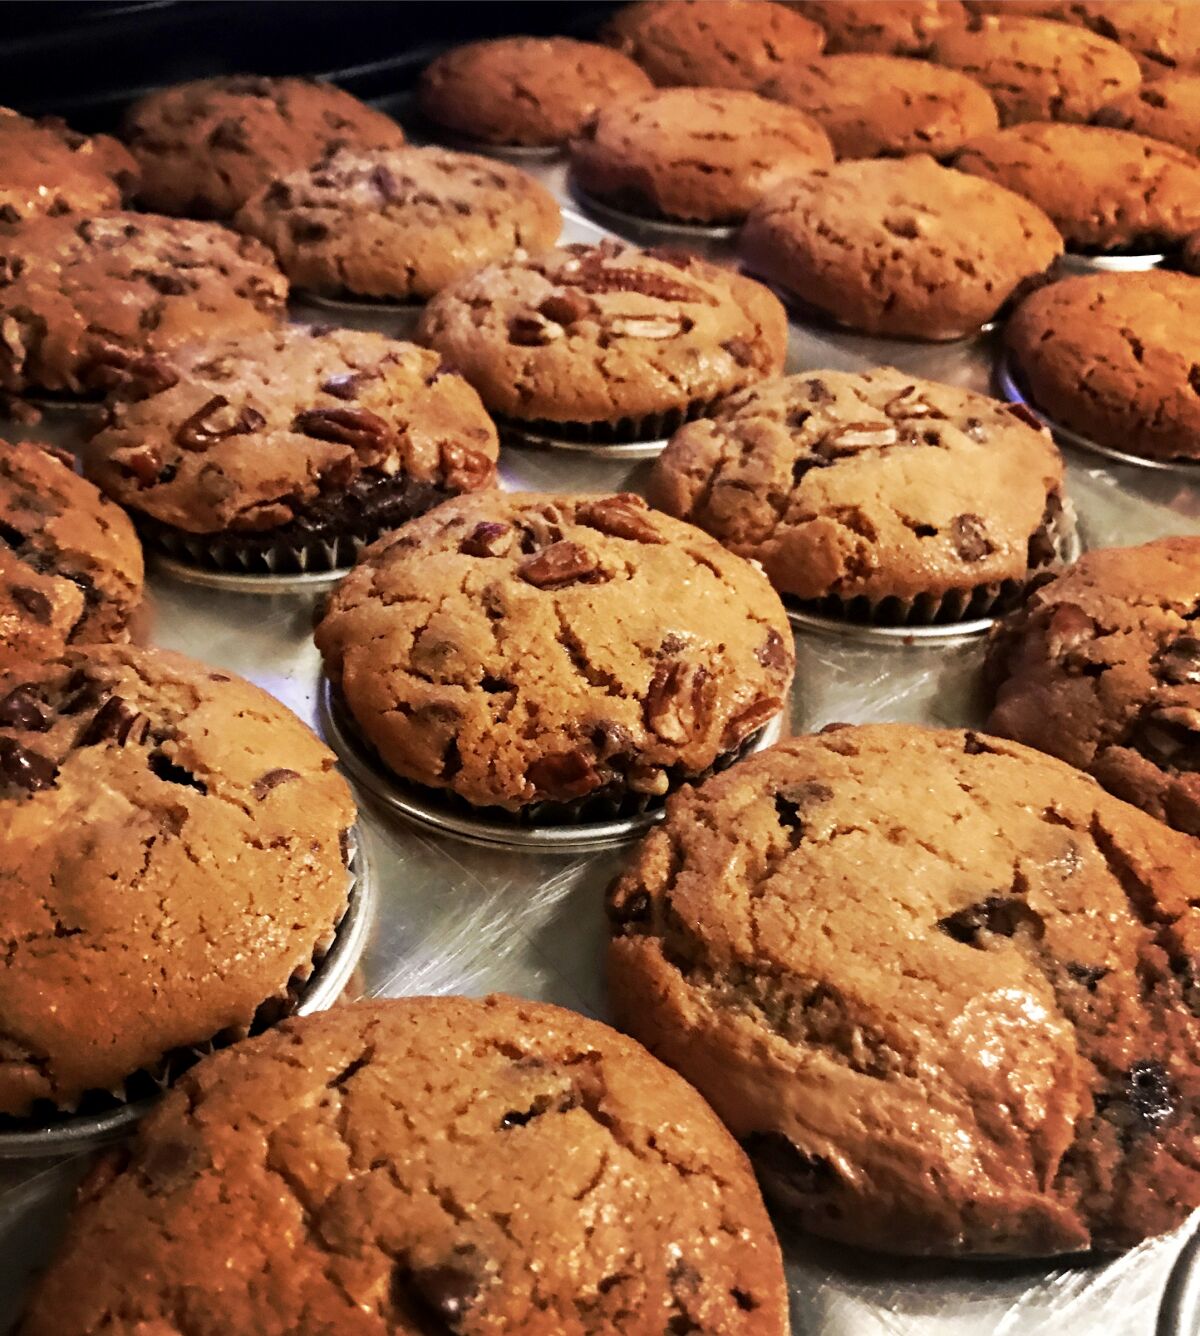 Milk + Brookies cross between brownies and cookies are baked in cupcake tins.